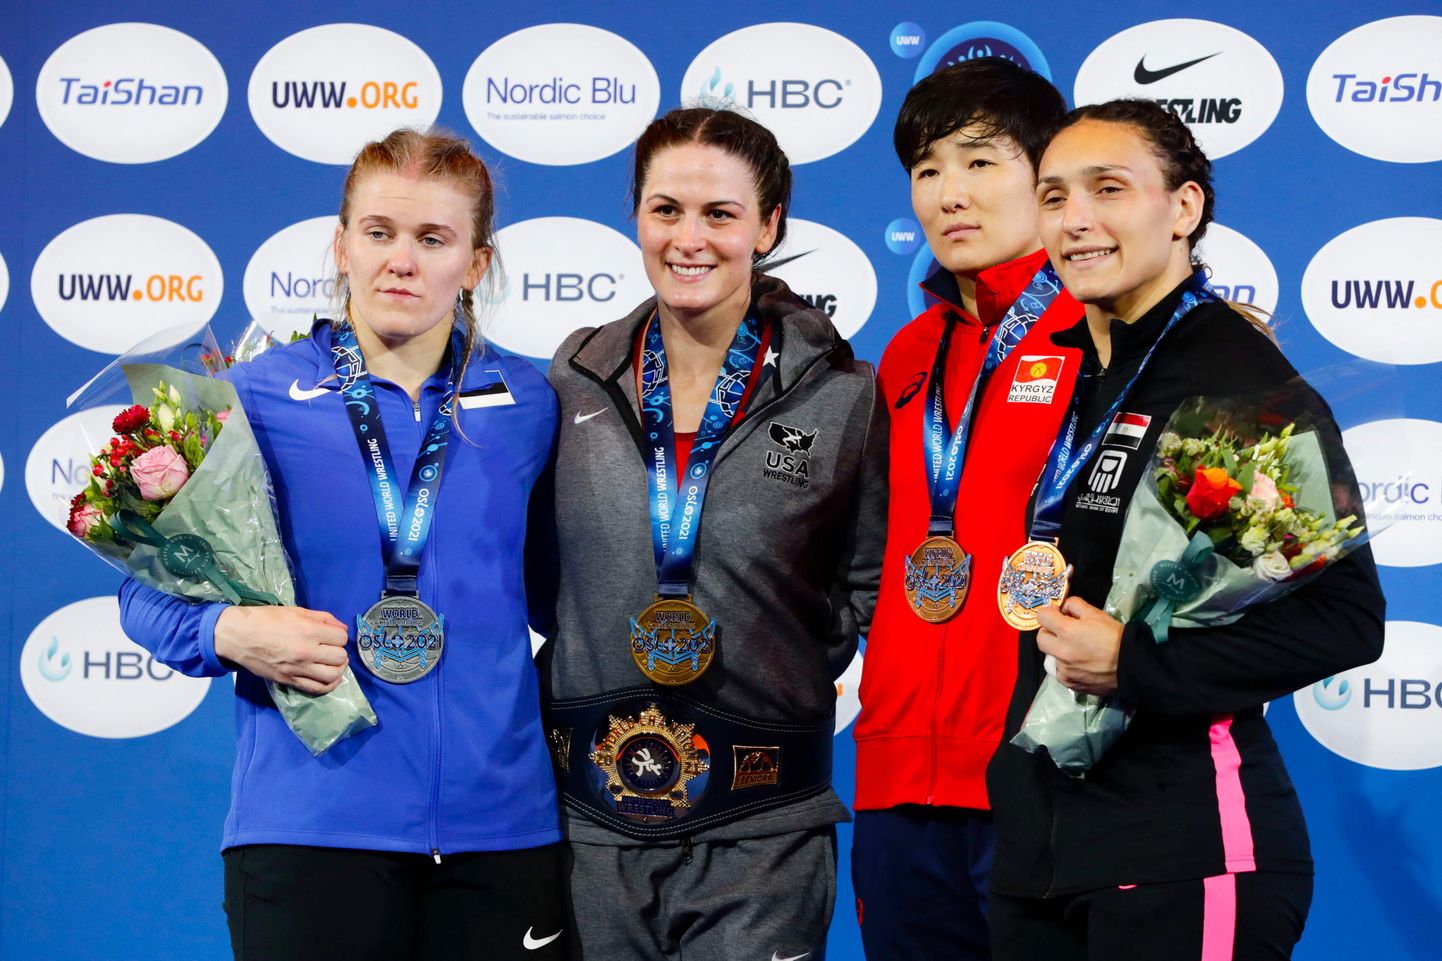 Maadluse MMi naiste raskekaalu medalistid. Kõige vasakul on eestlanna Epp Mäe, kes võitis hõbeda.